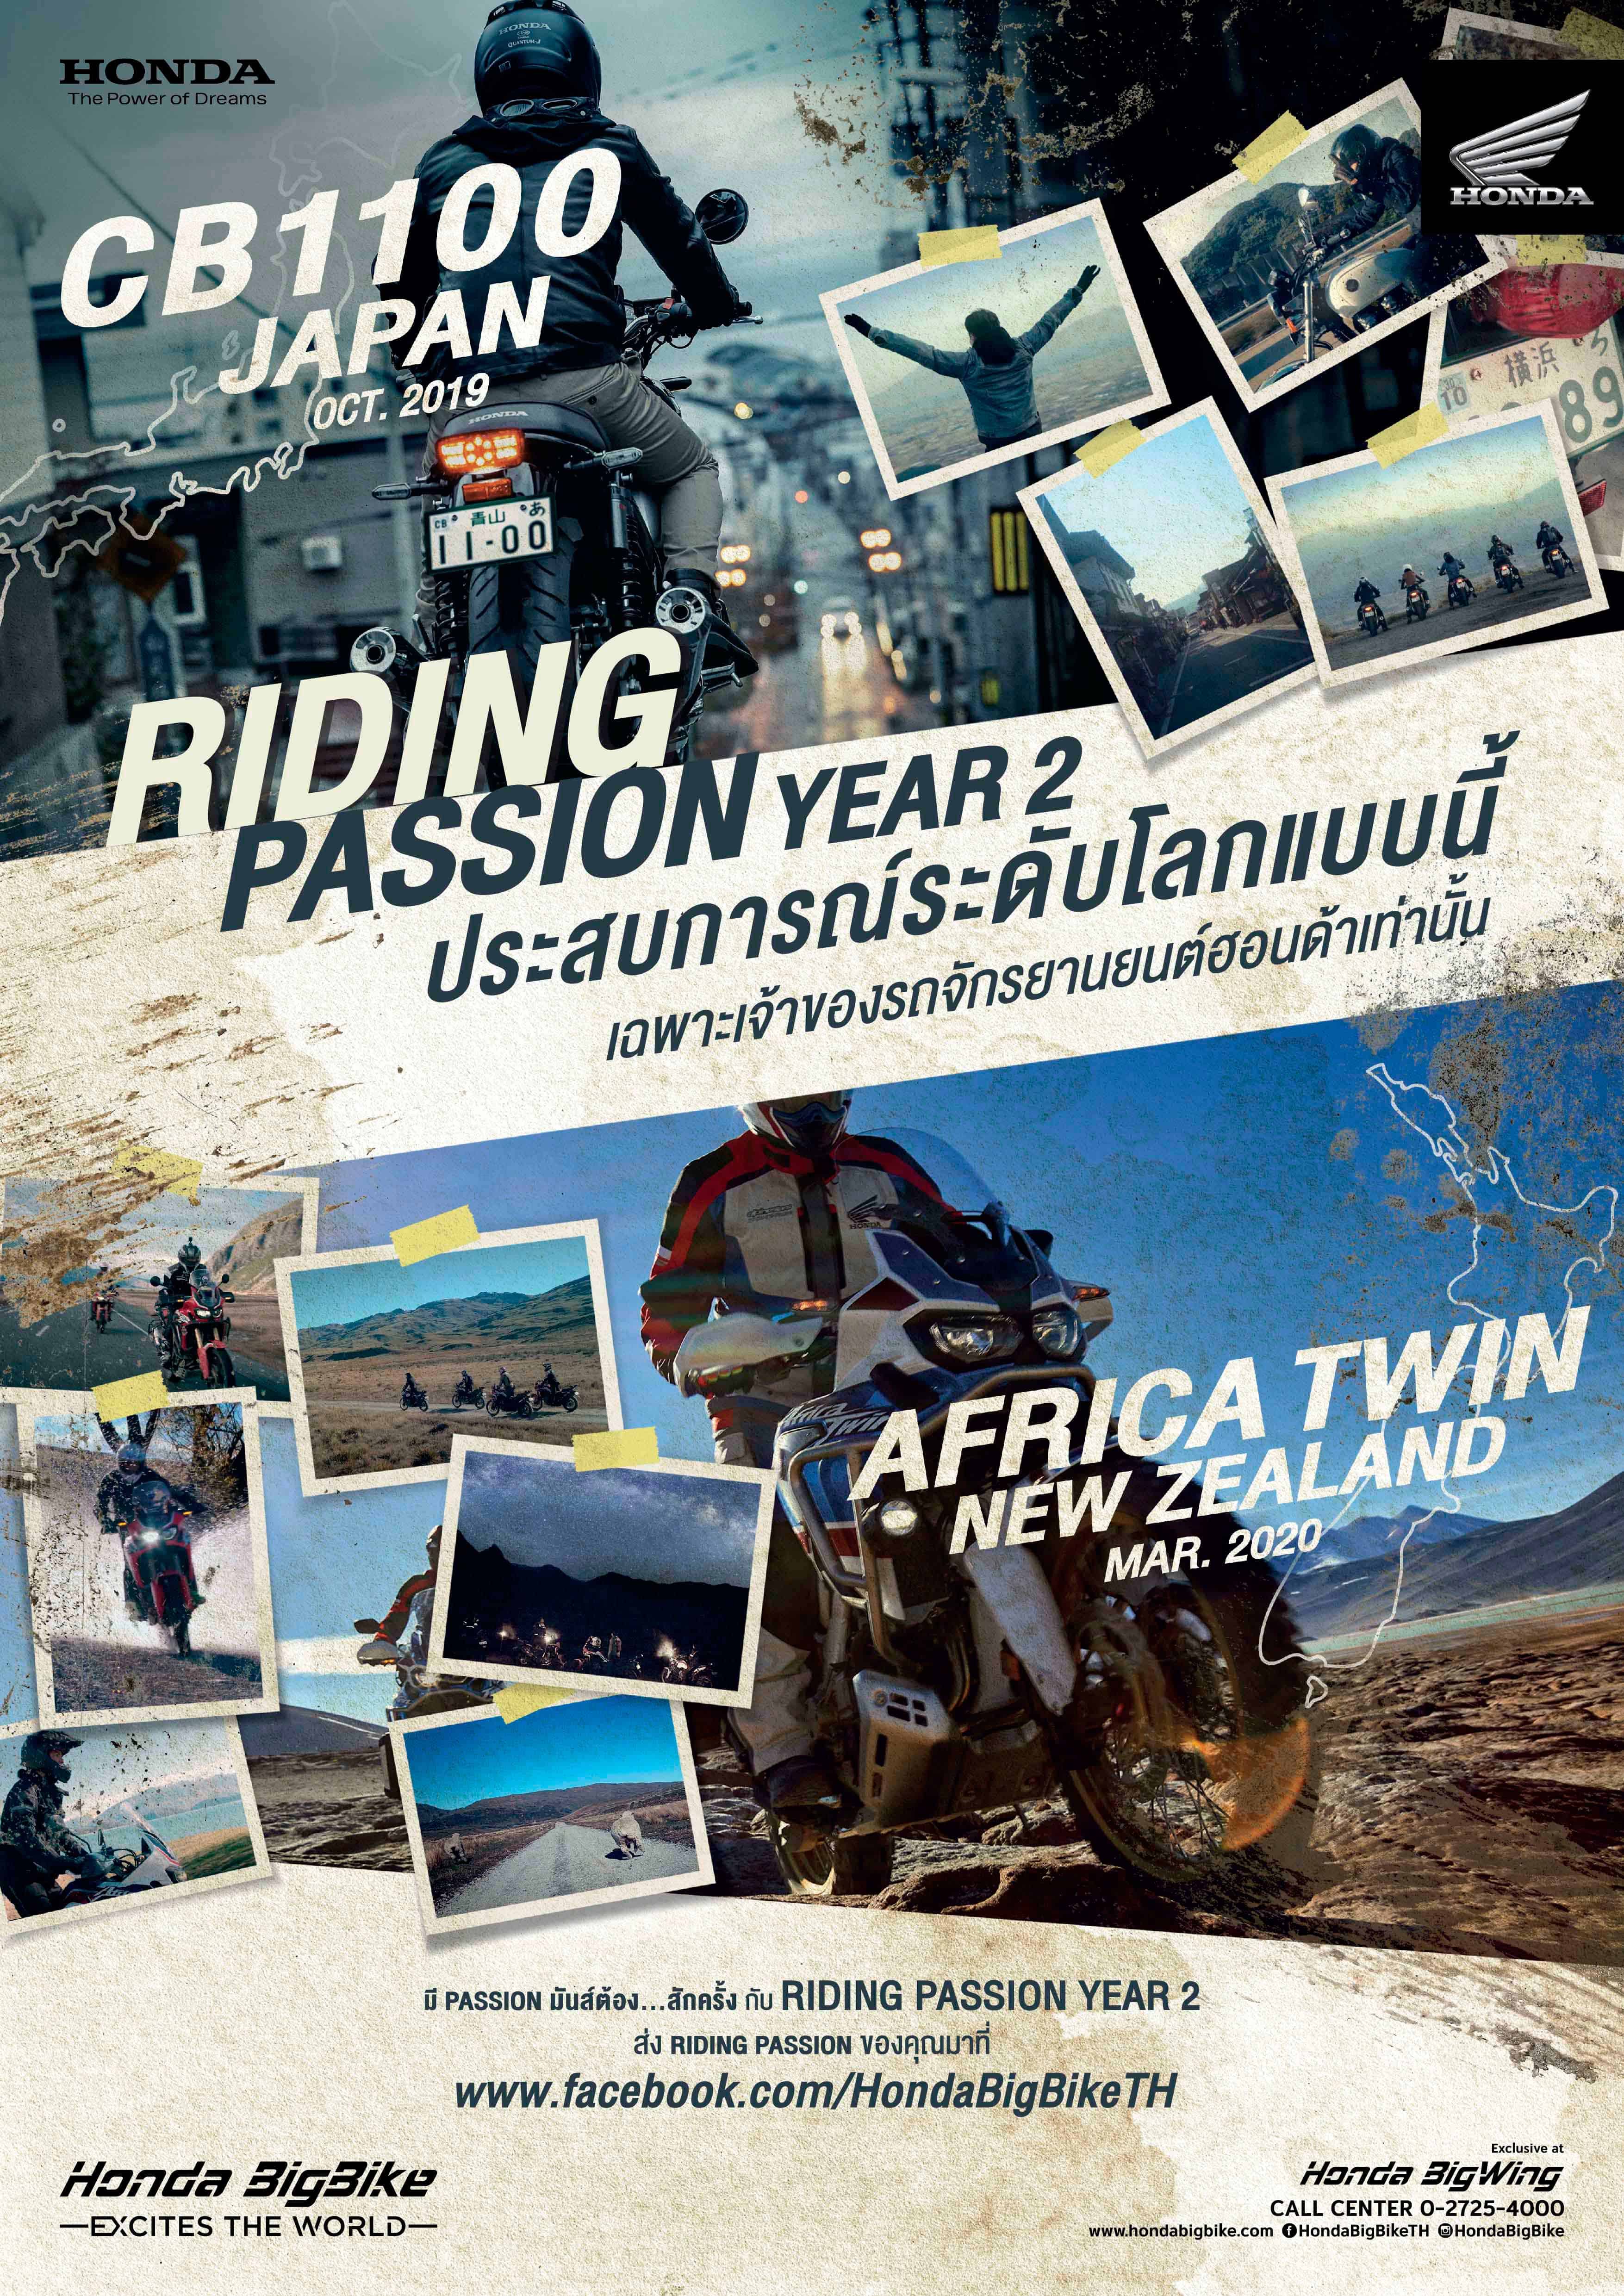 ฮอนด้า บิ๊กไบค์ เปิดแคมเปญ “Riding Passion Year 2”  คัดสุดยอดไบเกอร์ตะลุยญี่ปุ่นและนิวซีแลนด์ ฟรี!! | MOTOWISH 2